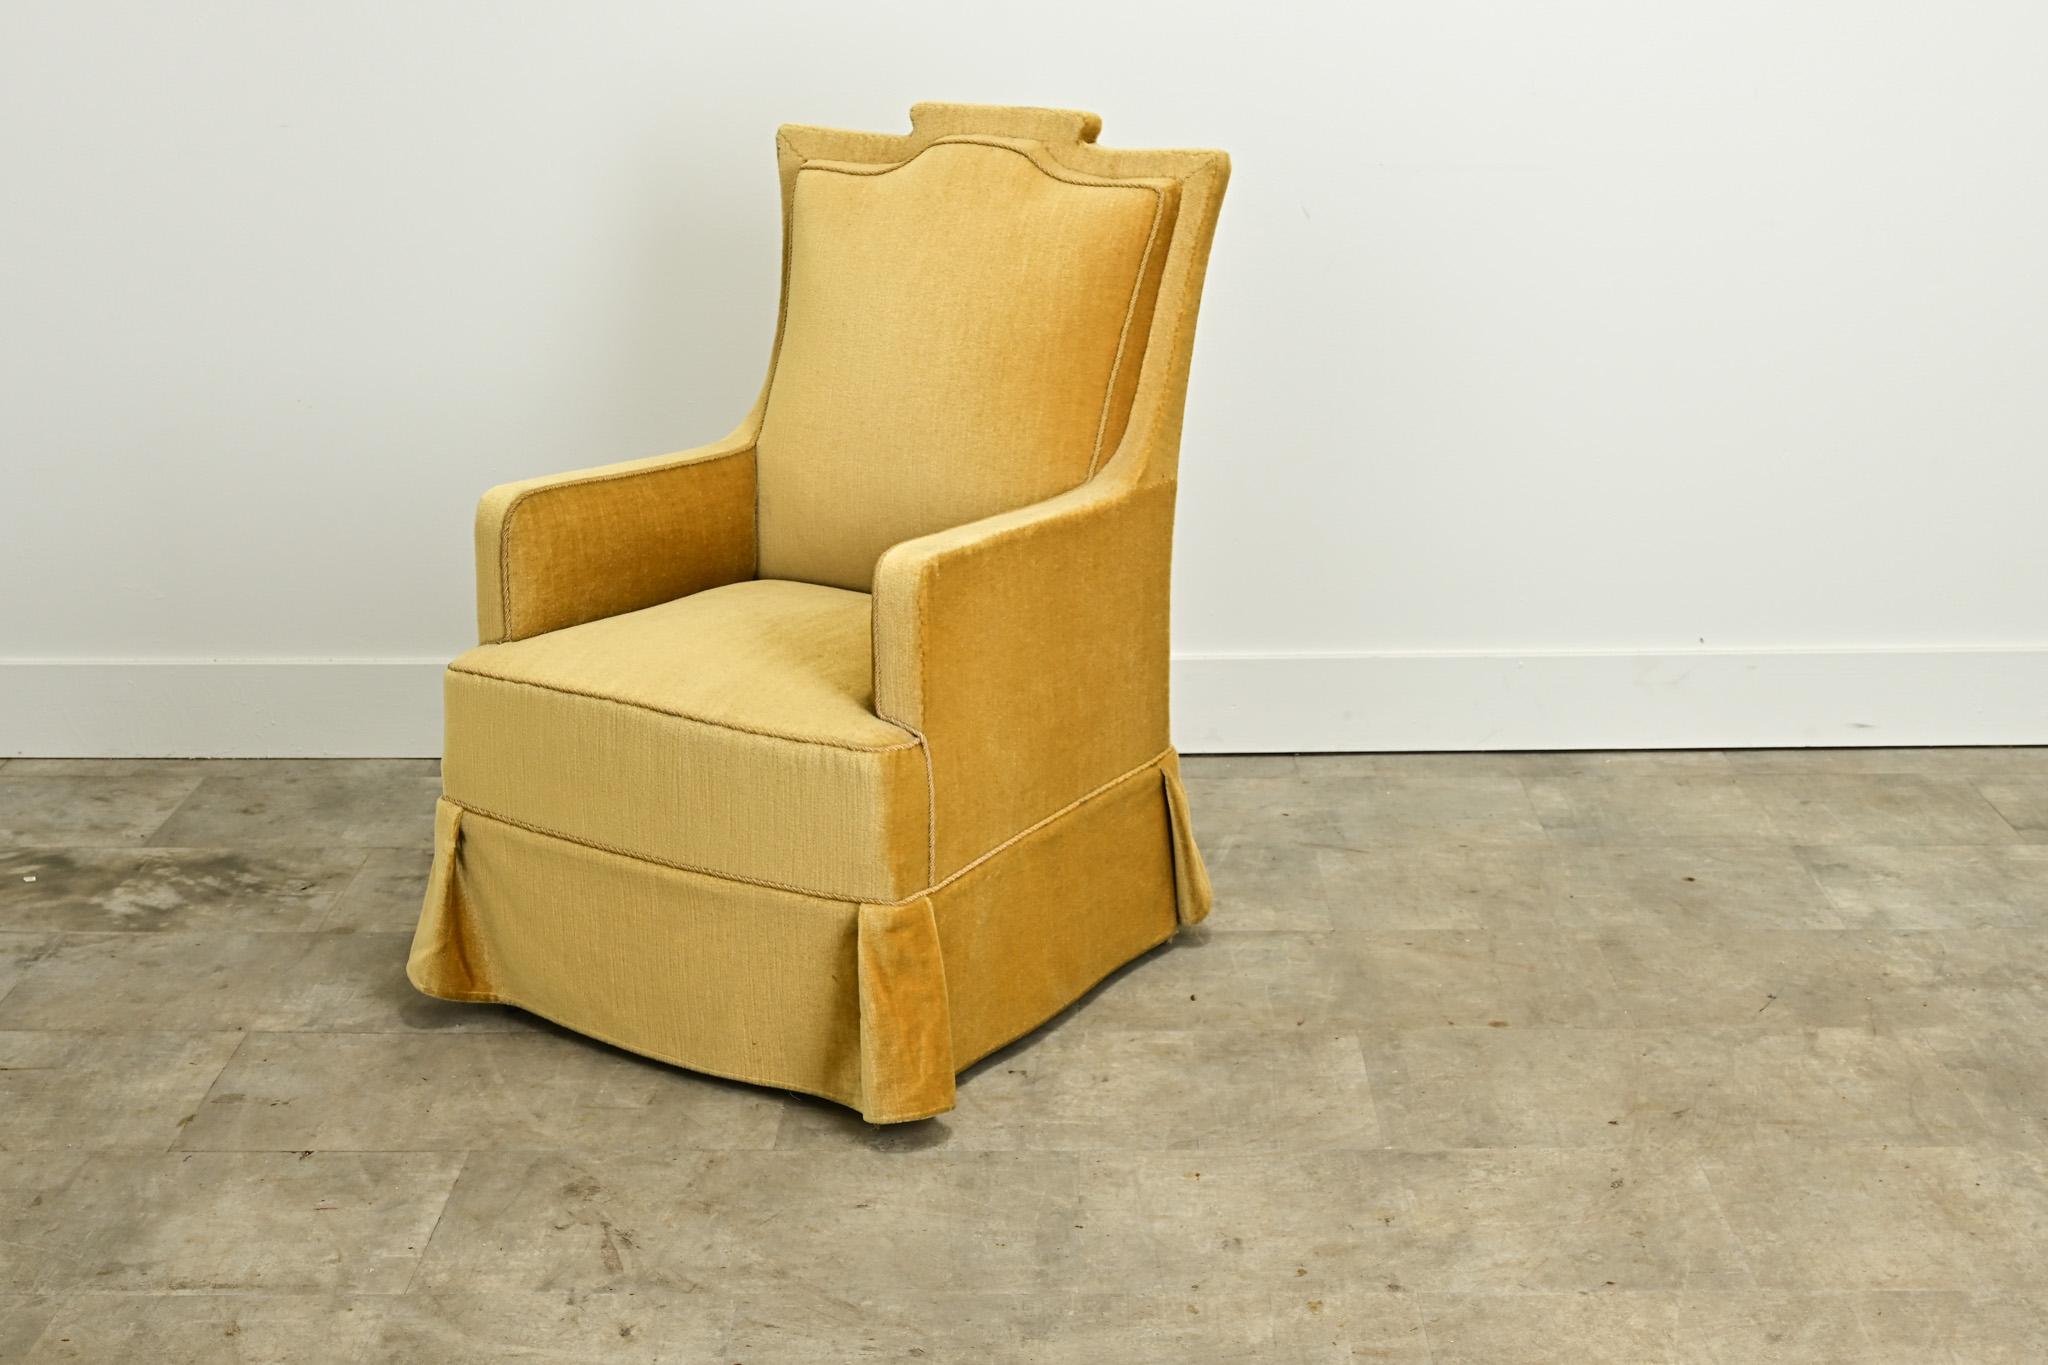 Ein bequemer Vintage-Mohair-Sessel aus den Niederlanden. Dieser Sessel ist mit einem senffarbenen Mohair-Stoff gepolstert und mit einer geflochtenen Zierleiste versehen. Schauen Sie sich unbedingt die Detailbilder an, um den aktuellen Zustand dieses